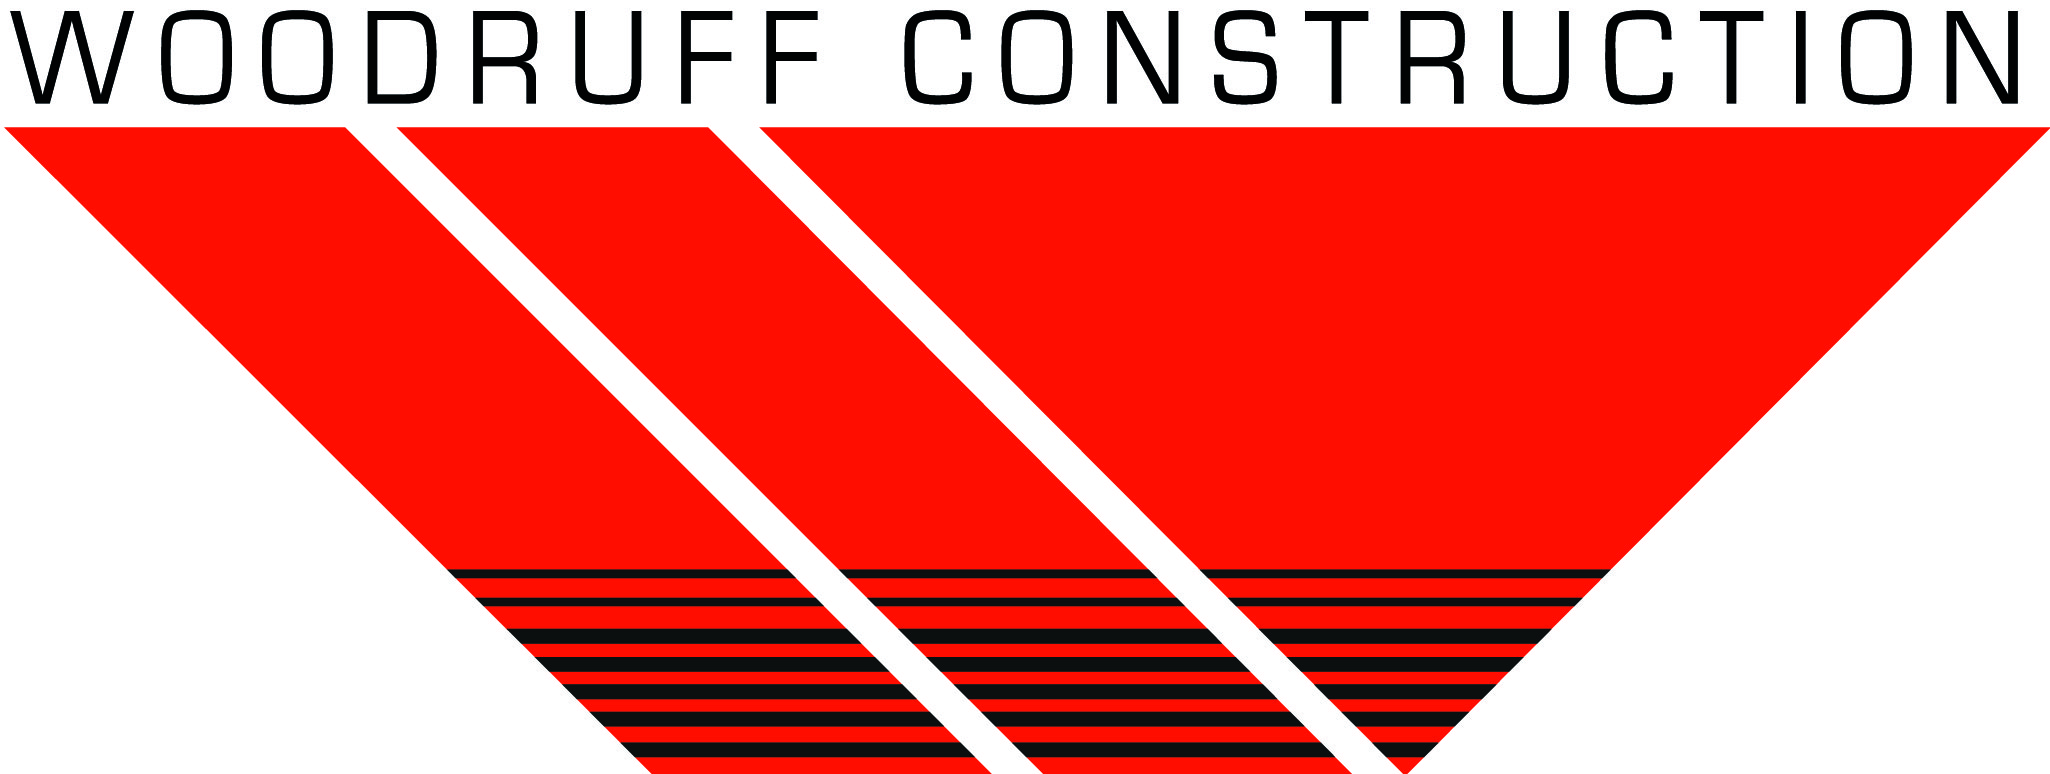 Woodruff Construction's Image